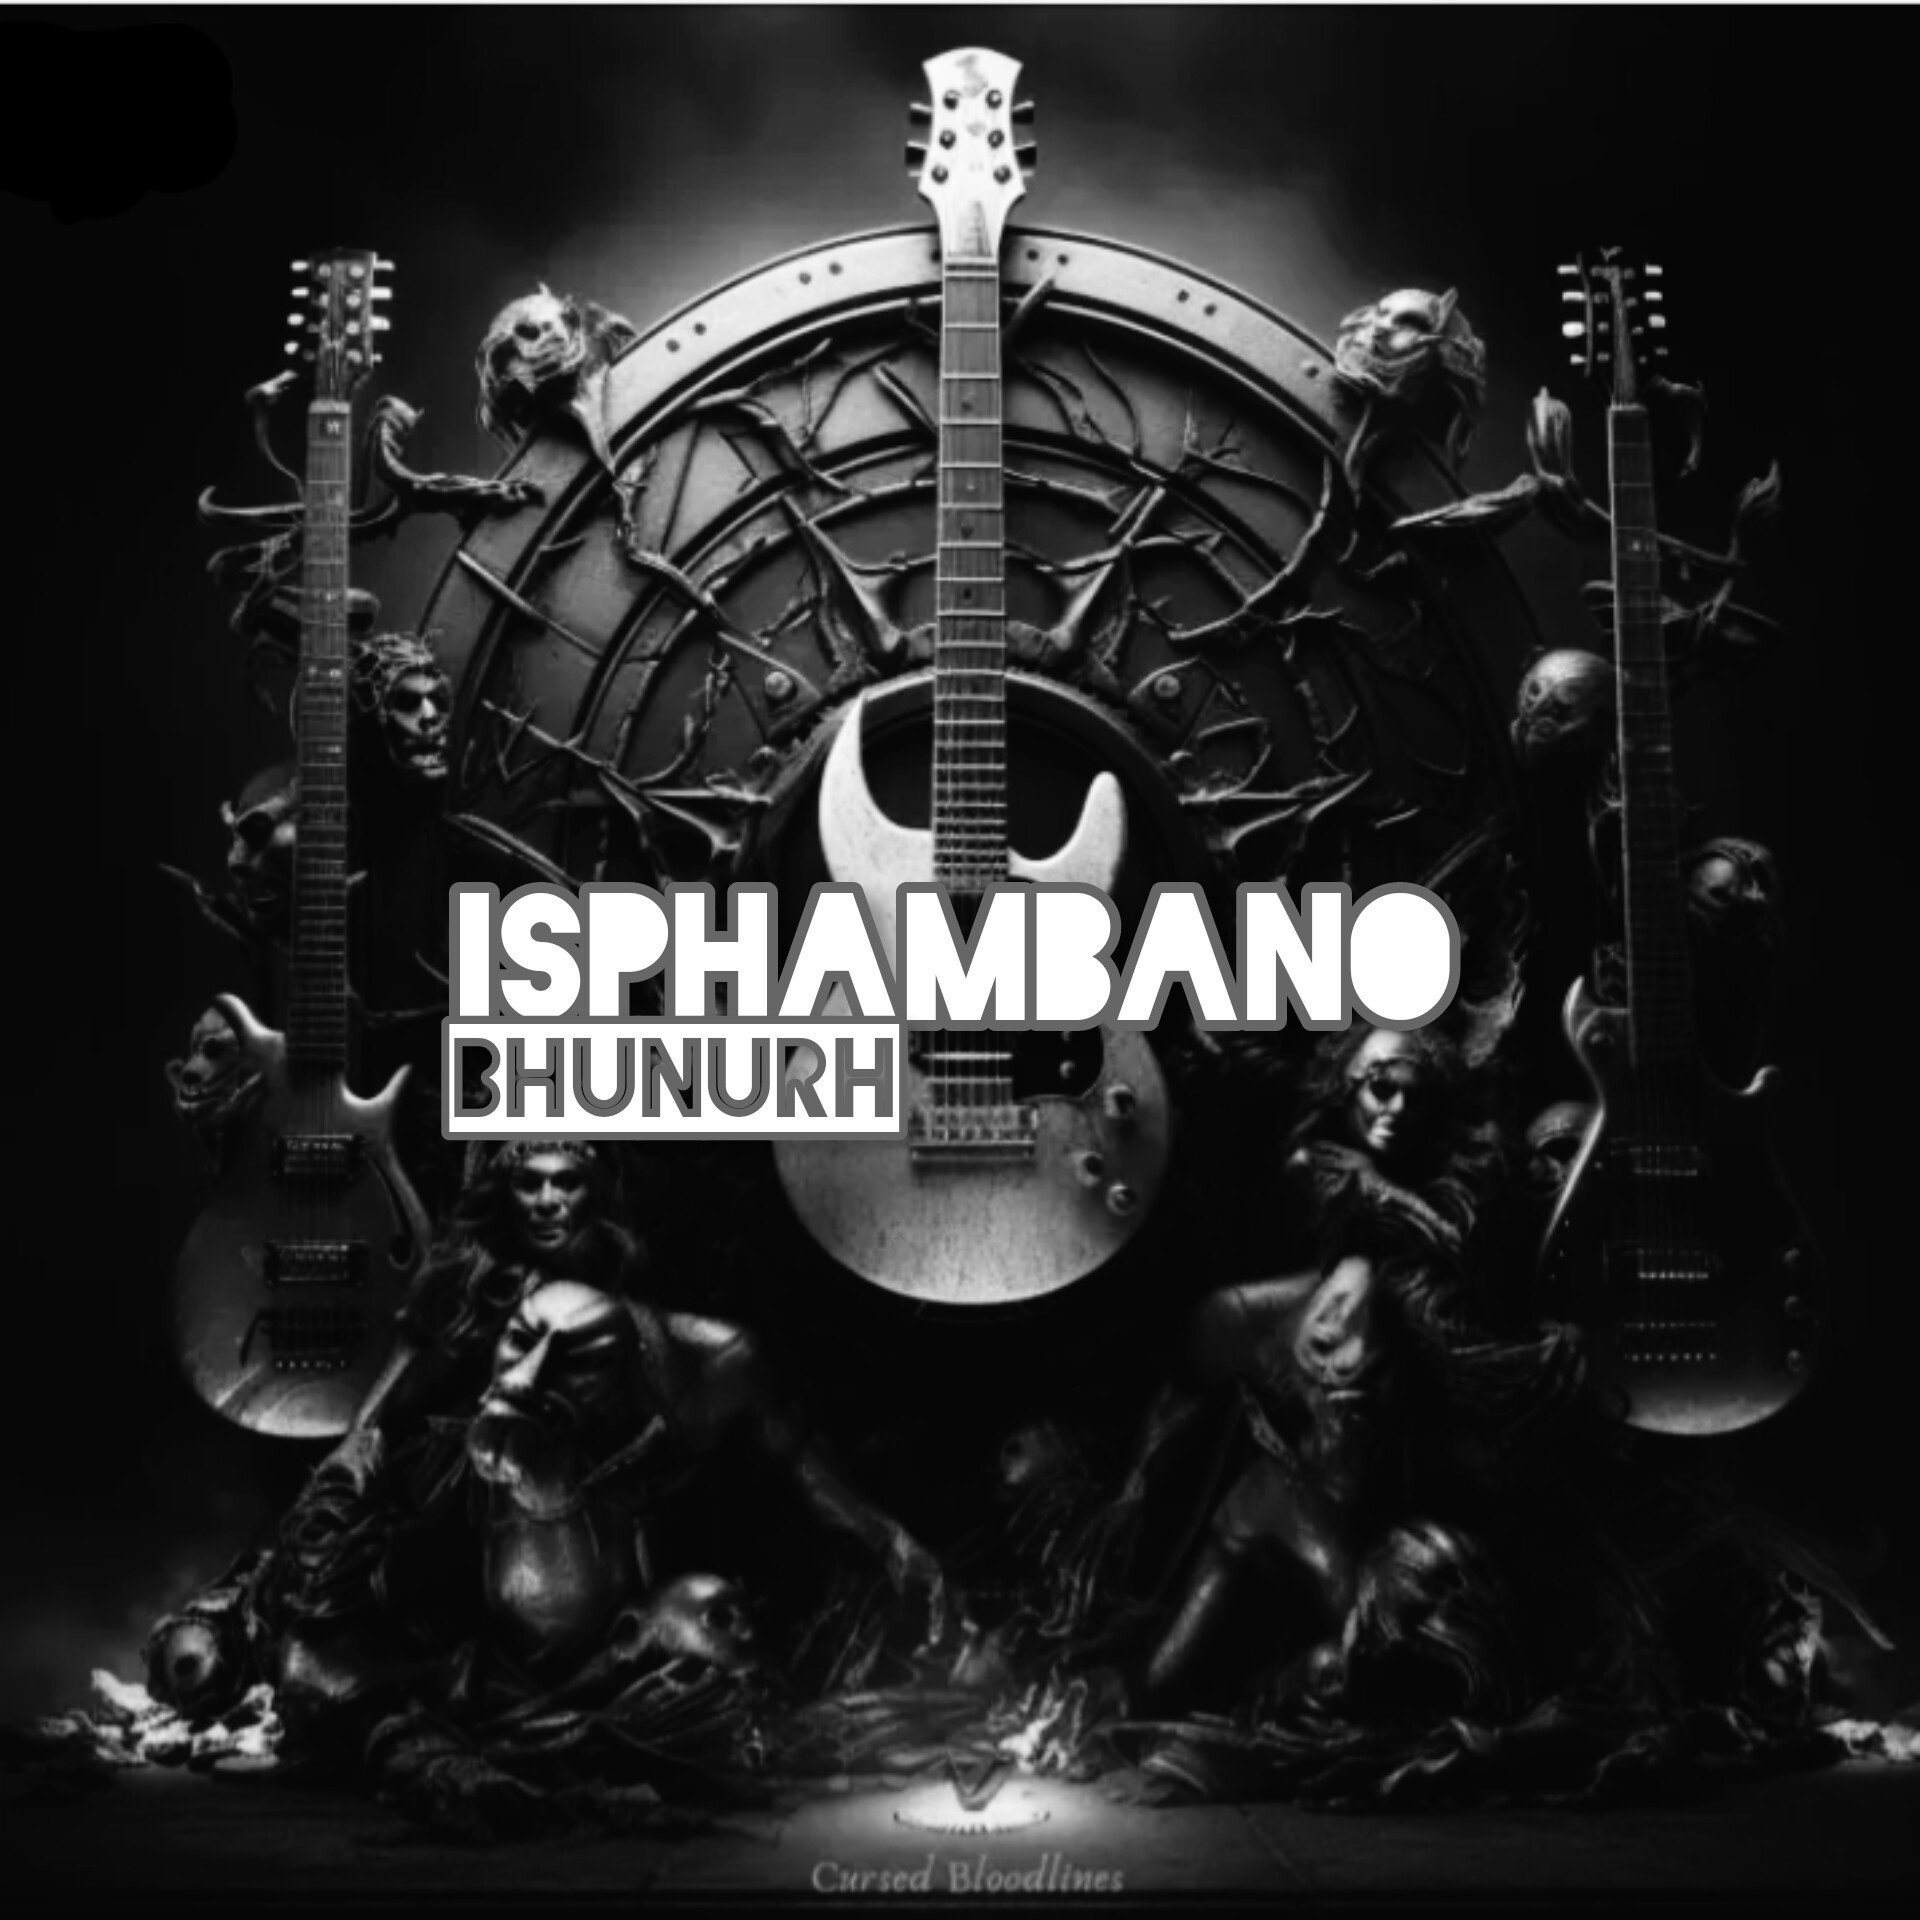 ISPHAMBANO - BHUNURH